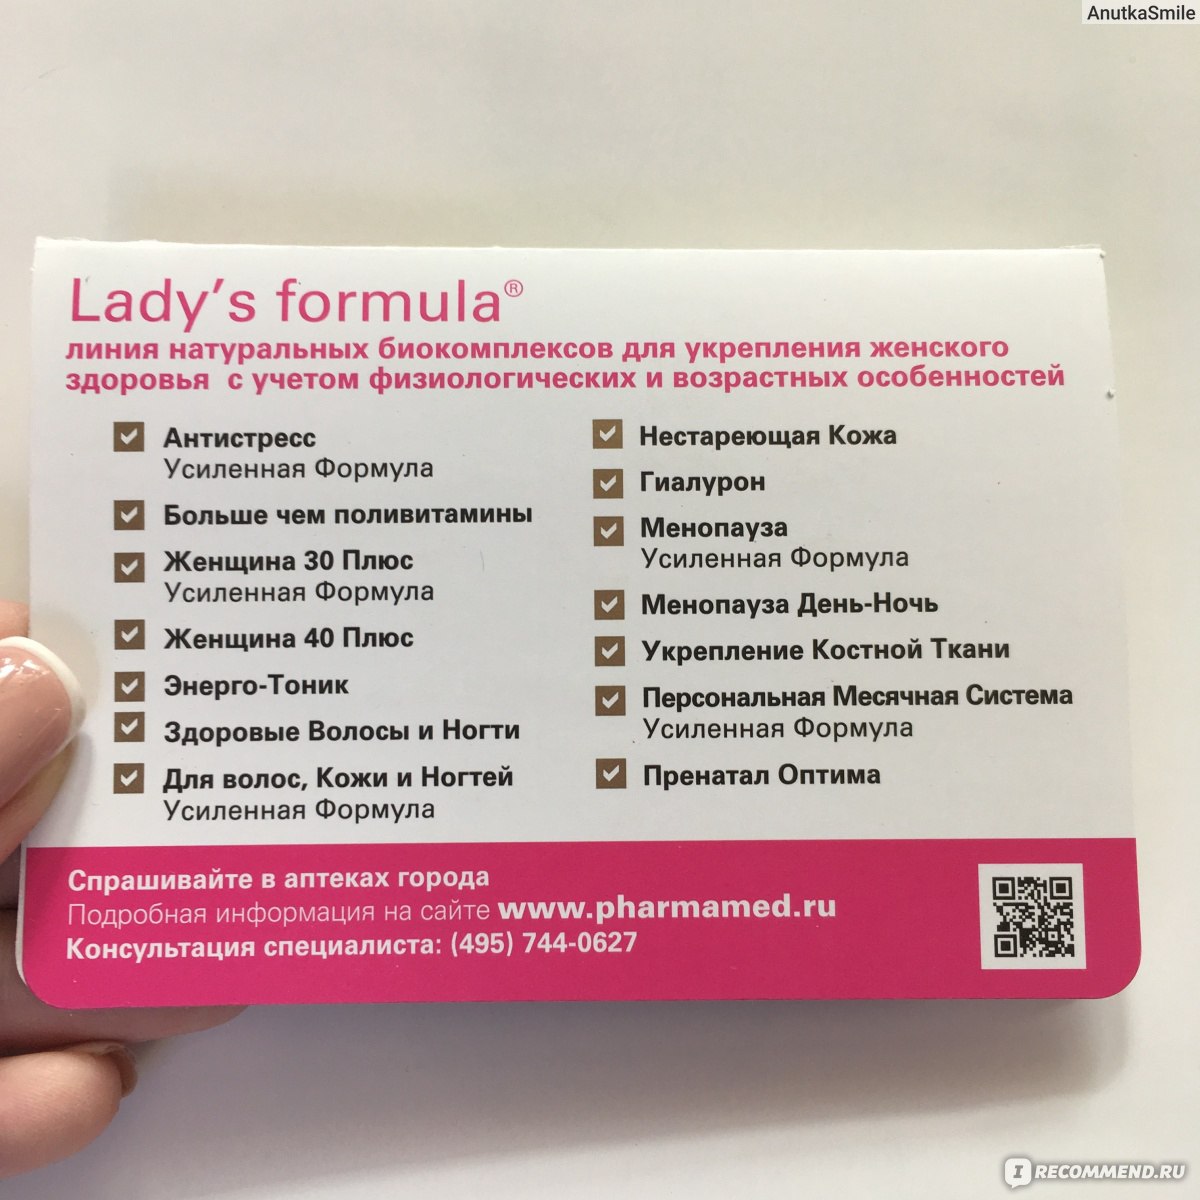 Ледис менопауза состав. Lady's Formula (ледис формула). Lady`s Formula больше чем поливитамины состав. Lady`s Formula антистресс состав. Американские витамины для женщин ледис формула.